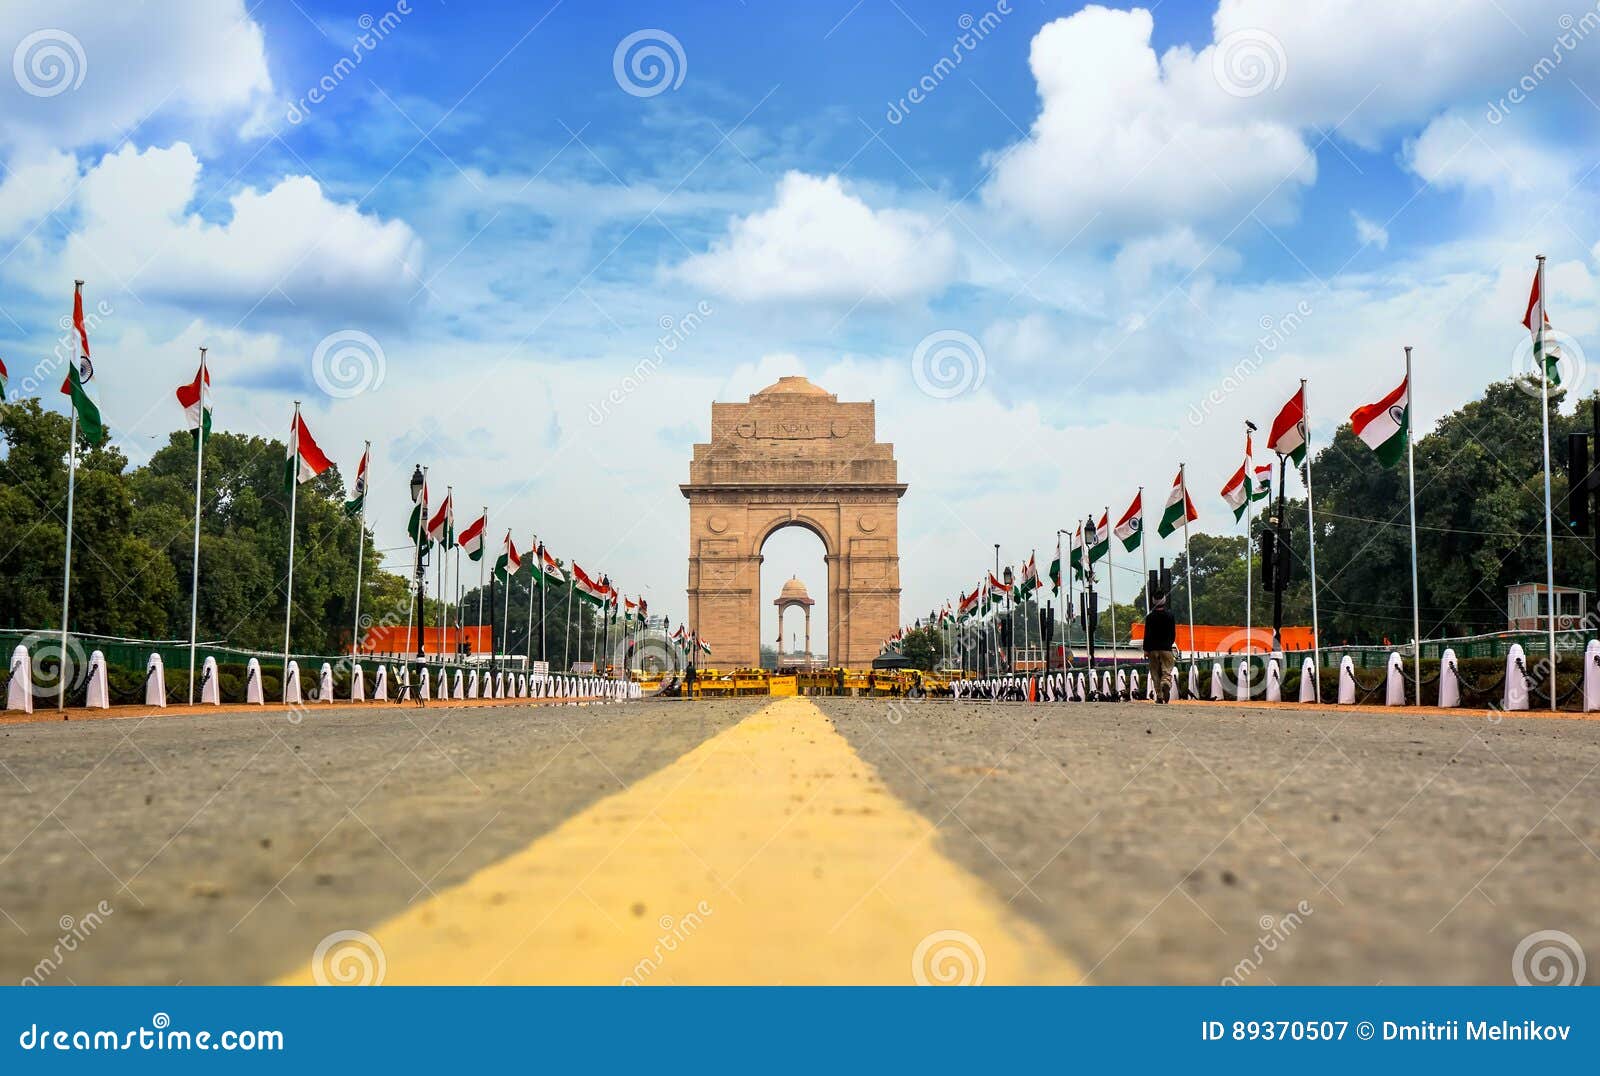 india gate, new delhi, india